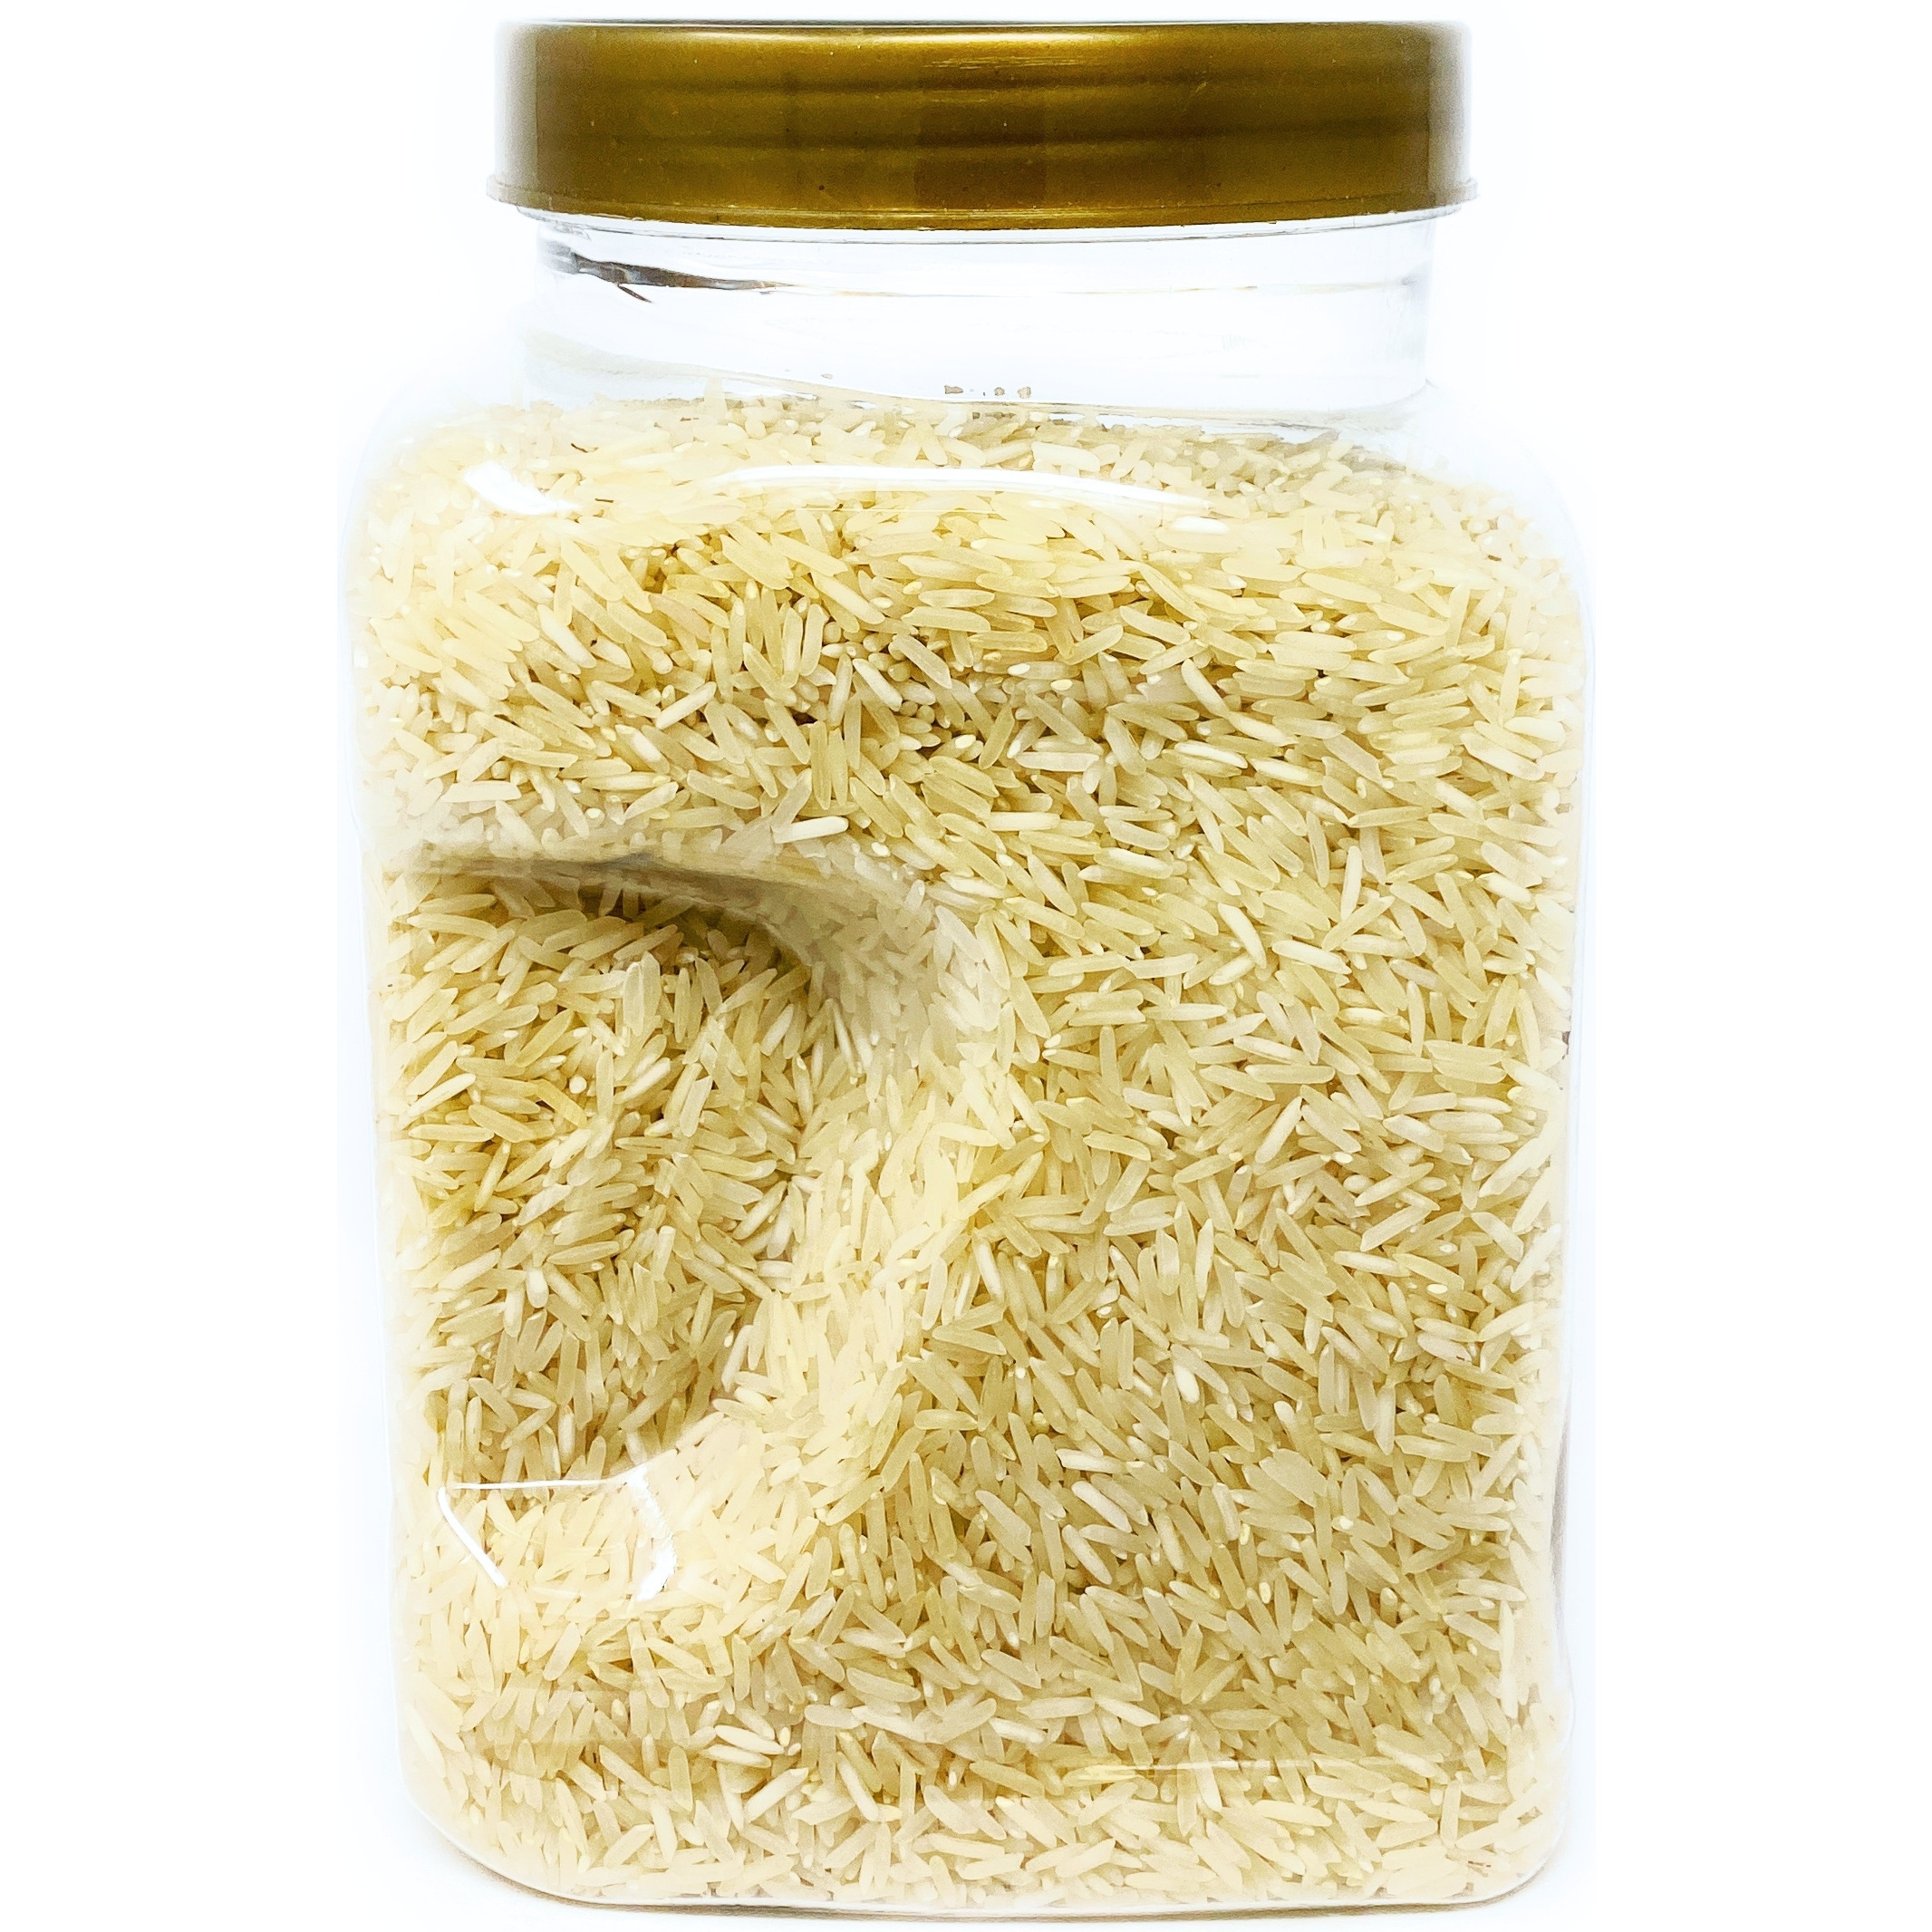 Rani Platinum White Basmati Rice Extra Long Aged, 3lbs (48oz) ~ PET Jar ~ All Natural | Vegan | Gluten Free Ingredients | Indian Origin